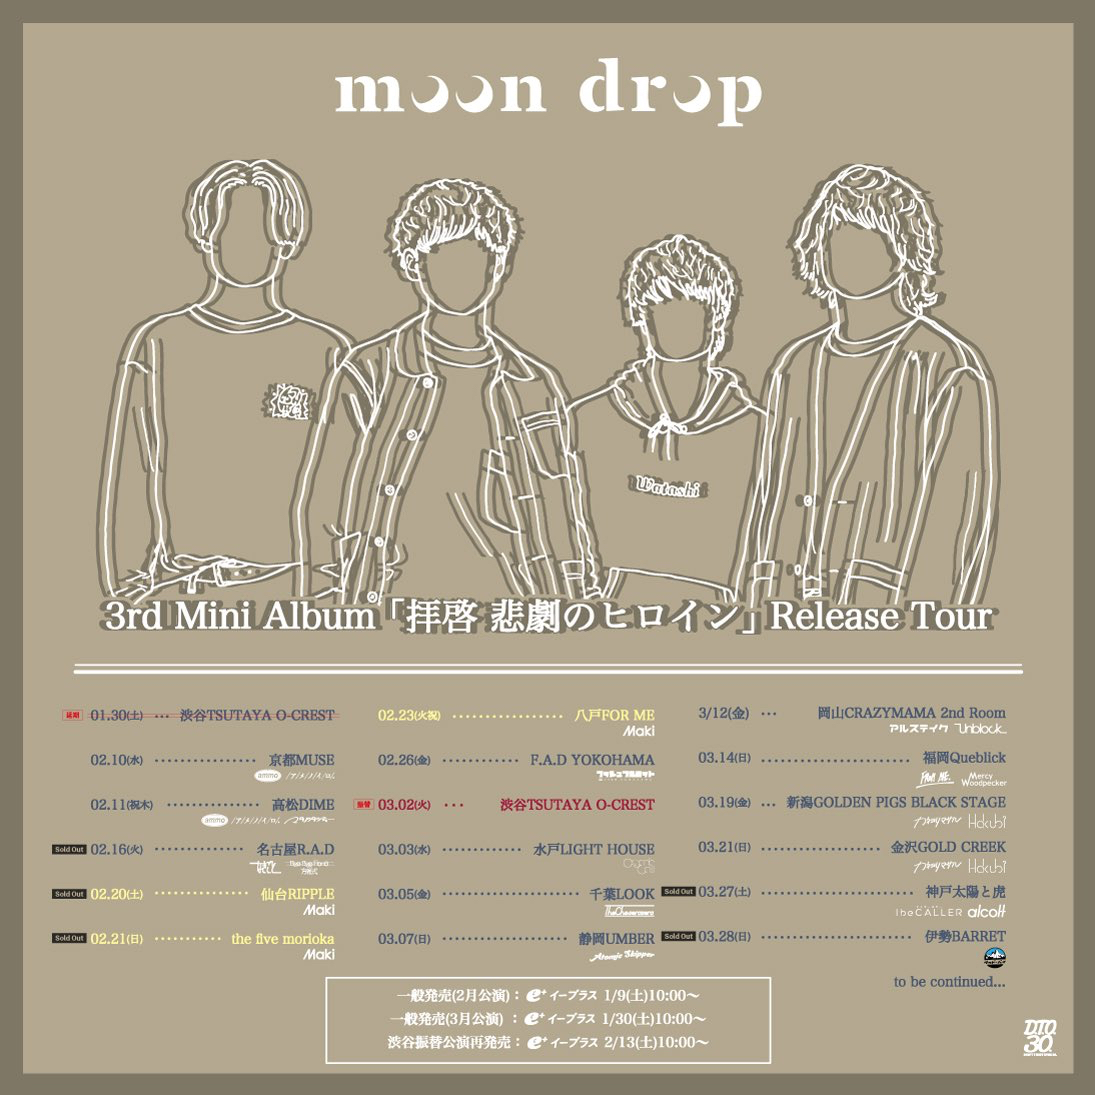 (※時間変更)moon drop 3rd Mini Album「拝啓 悲劇のヒロイン」Release Tour